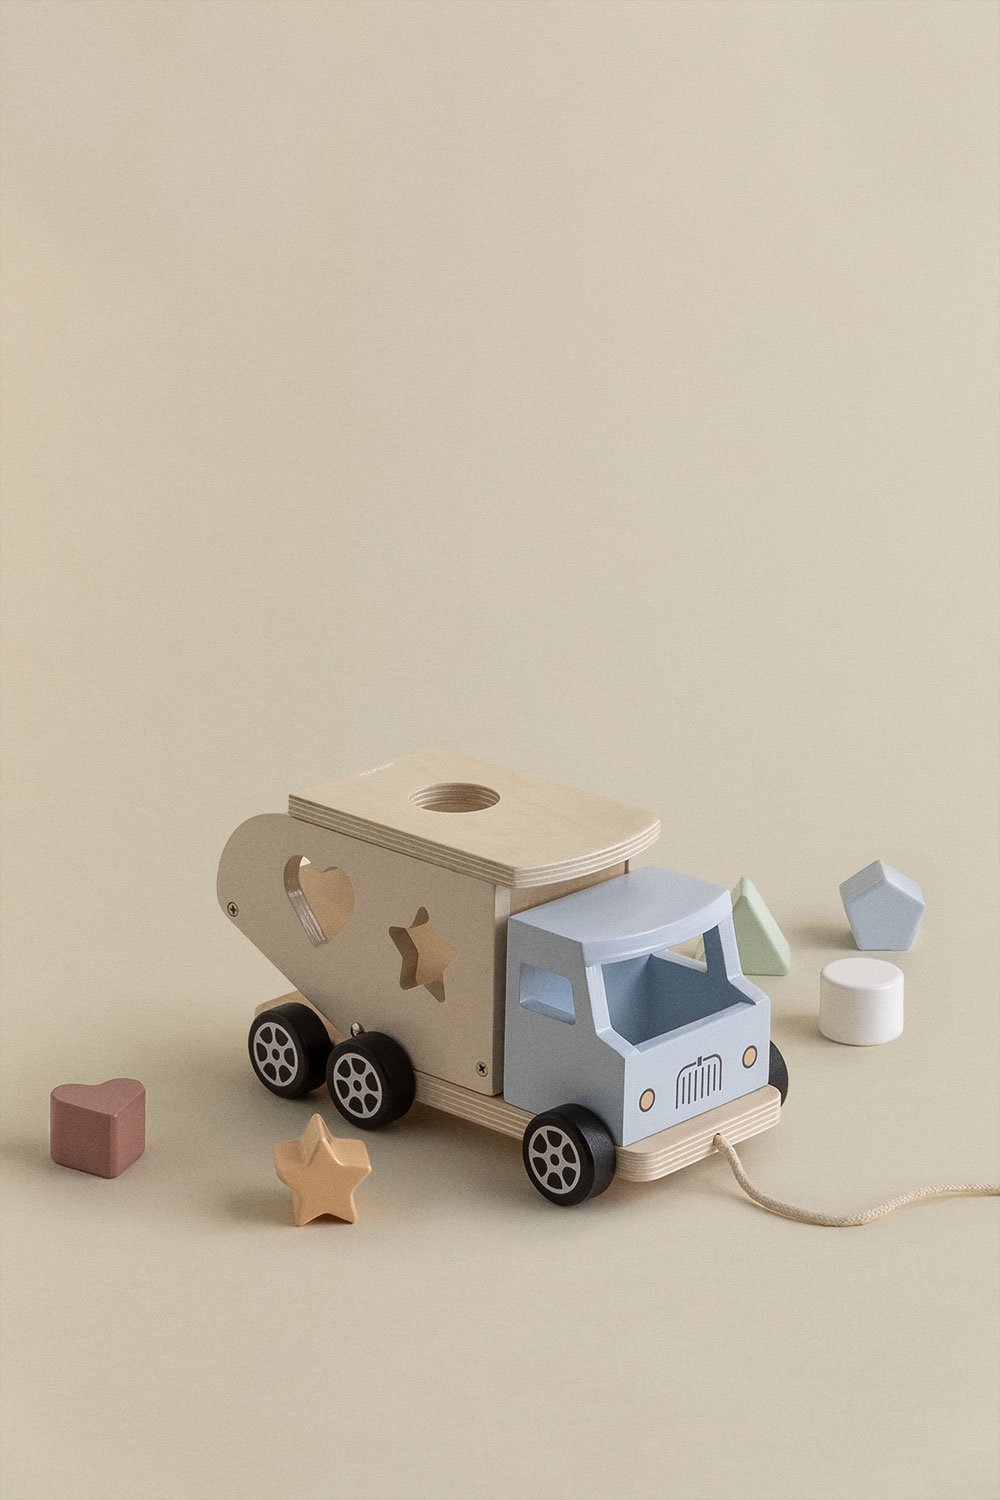 Verny houten vrachtwagen voor kinderen, galerij beeld 1